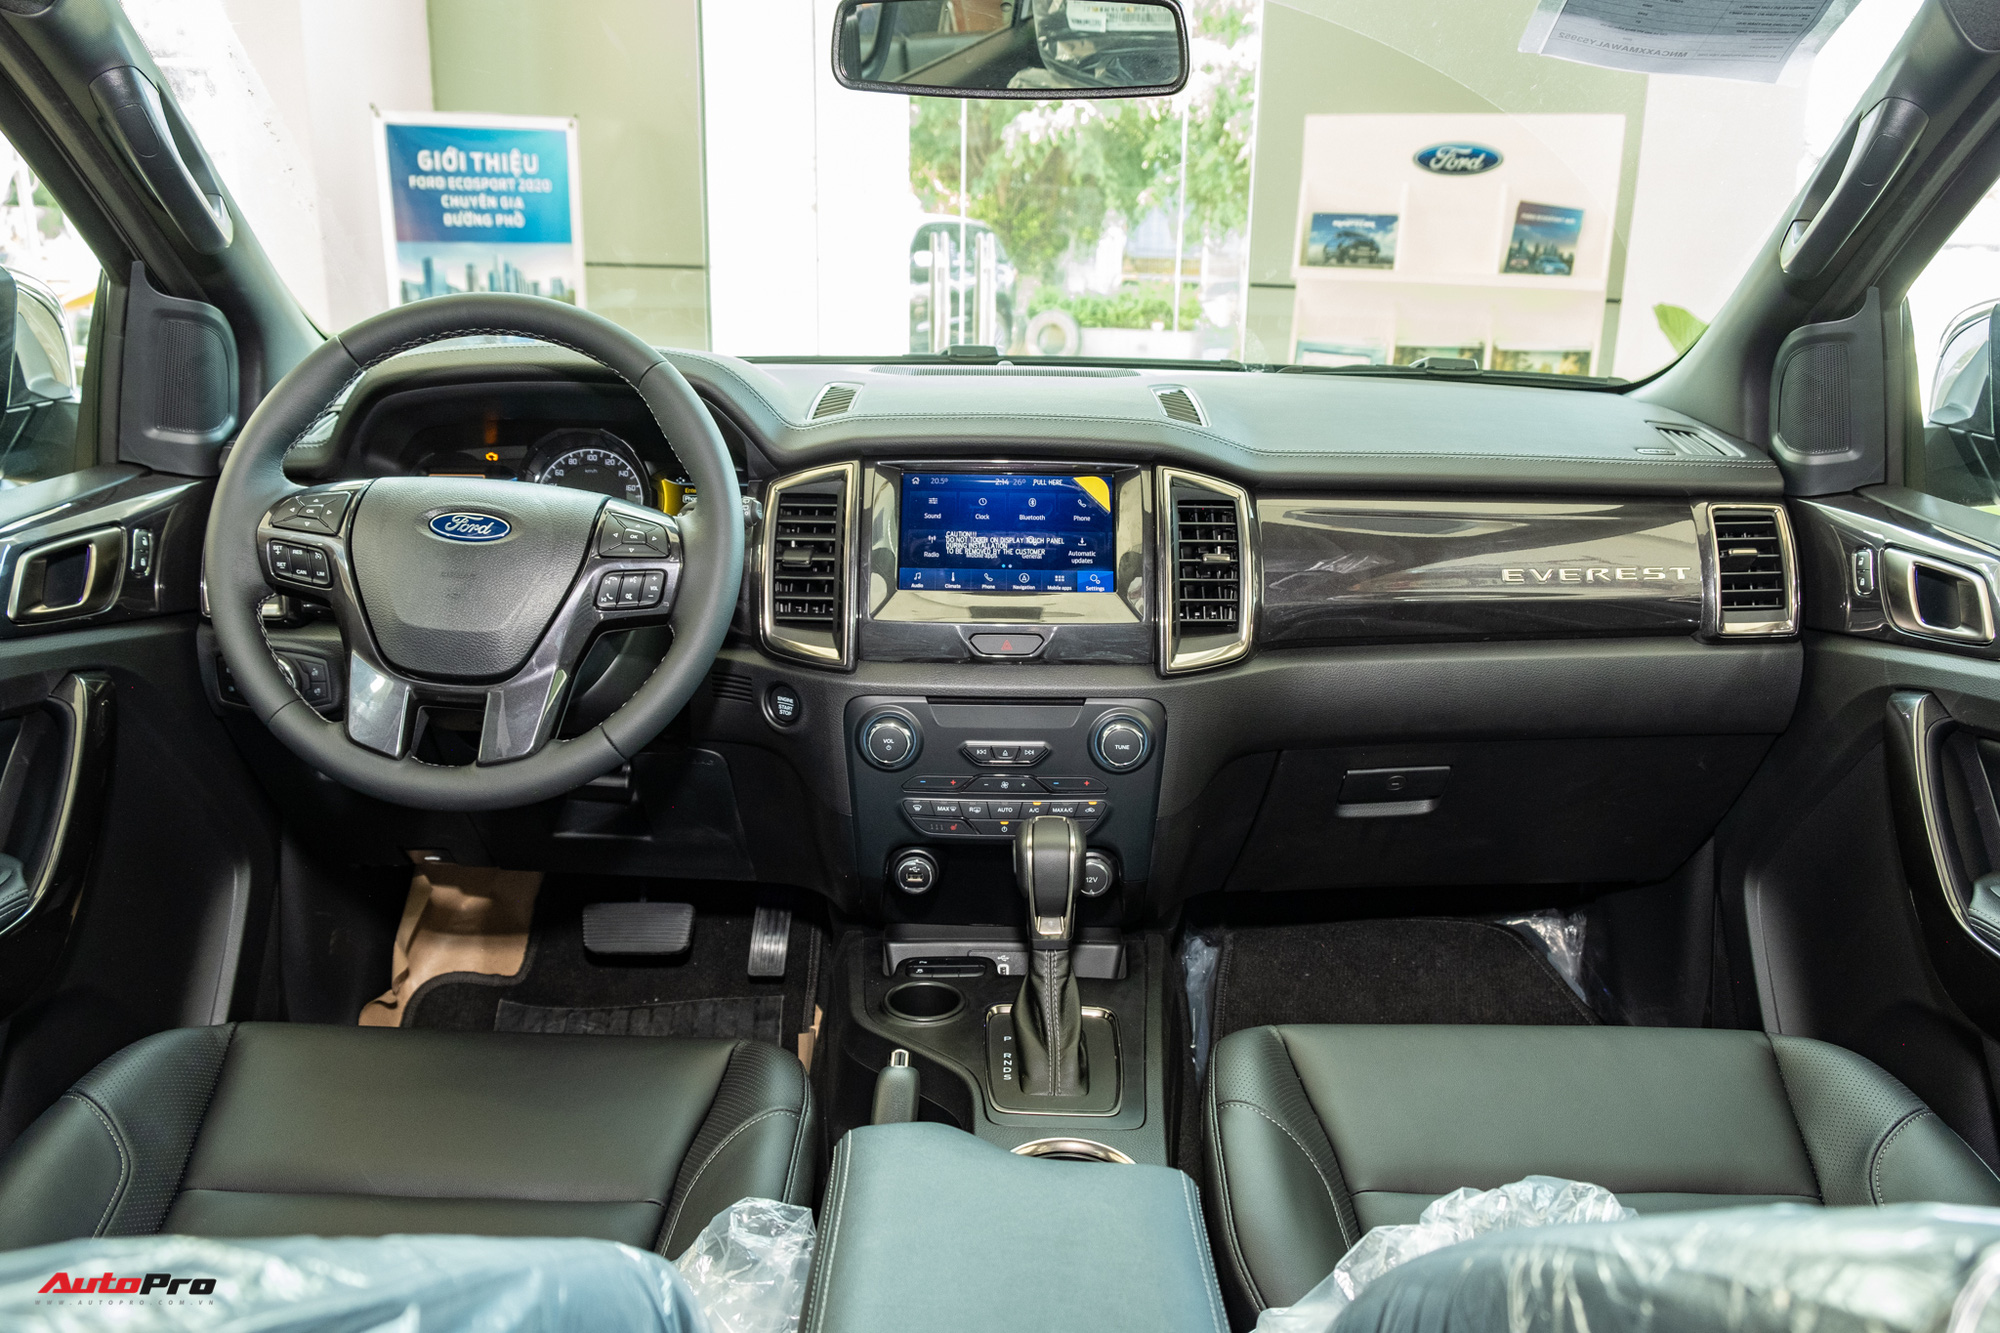 Ford Everest 2021 tung ưu đãi cả trăm triệu đồng, có giá bán thấp kỉ lục 'đe nẹt' Hyundai SantaFe